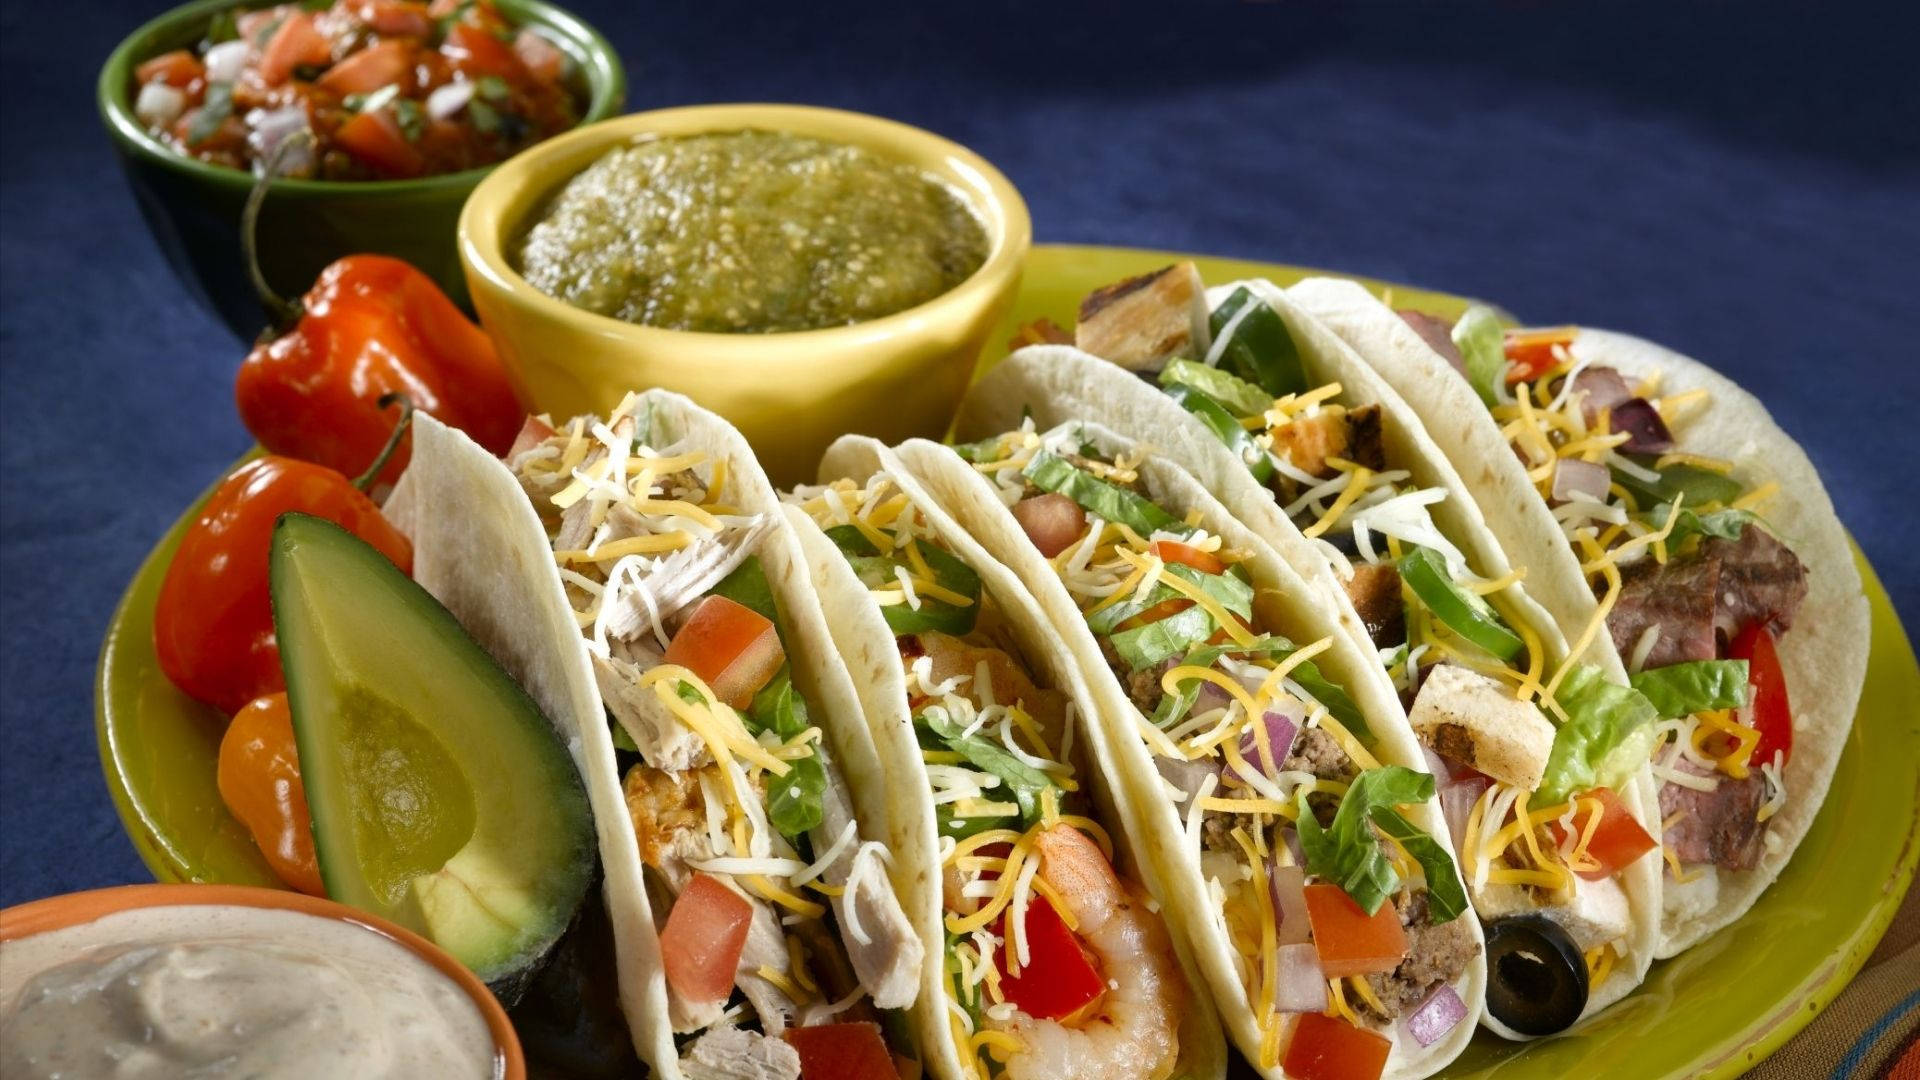 Meksika Mutfağı İle İlgili Bilgiler